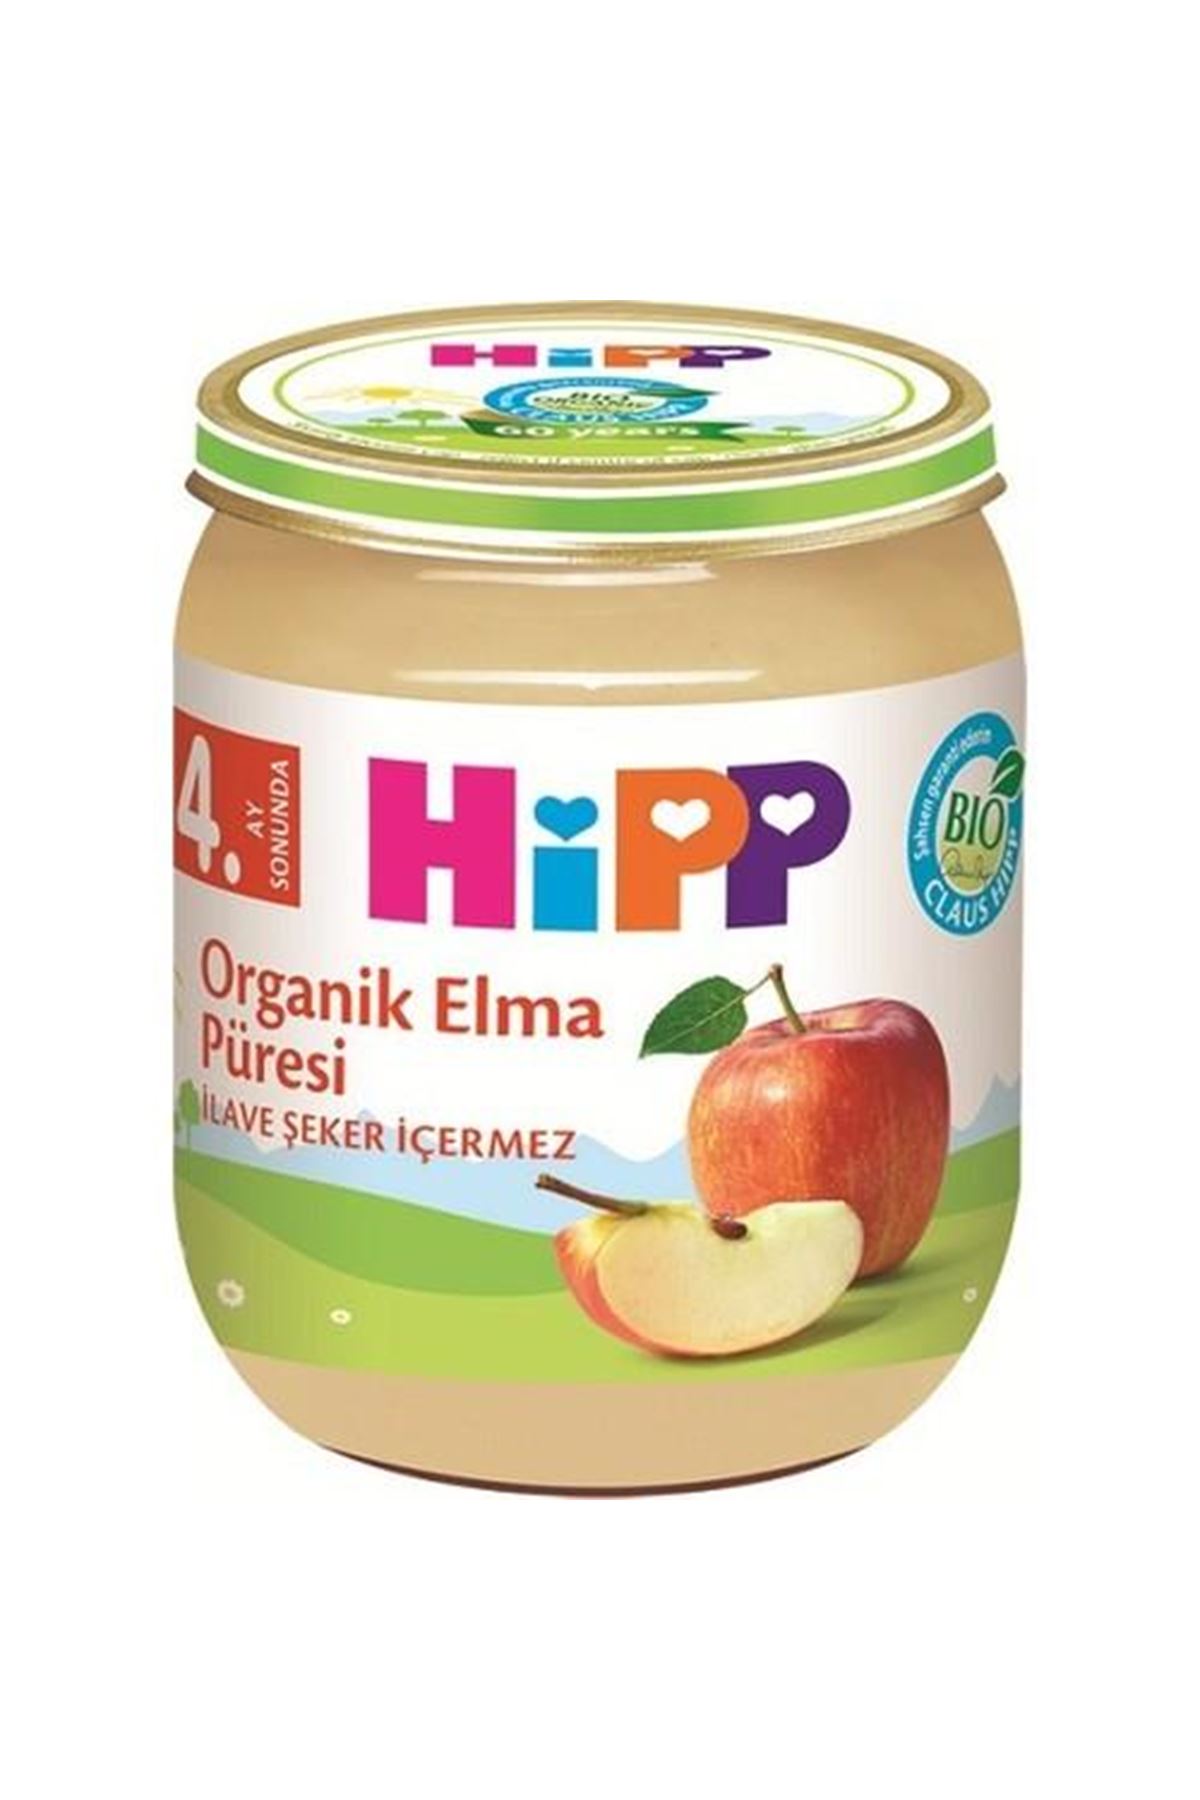 Hipp Organik Elma Püresi 125gr